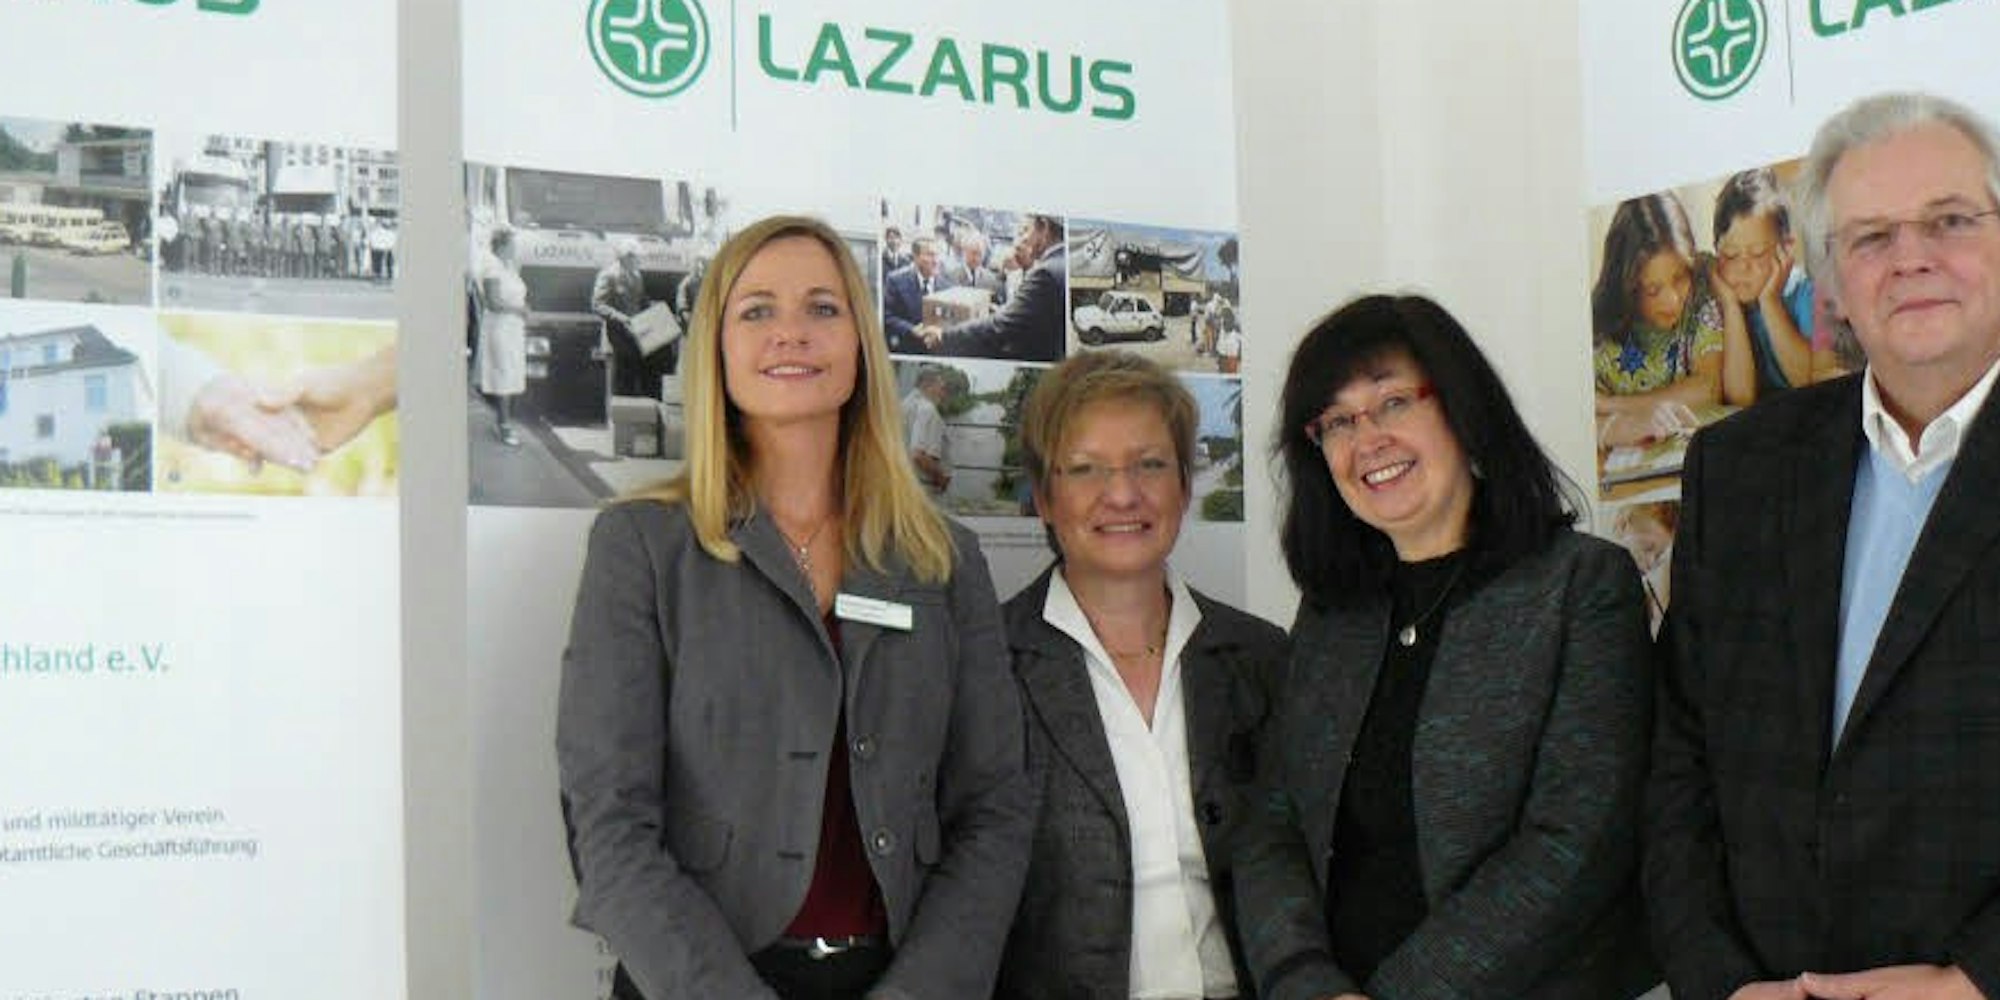 Heimleiterin Claudia Hillen (l.) mit Bezirksbürgermeisterin Cornelie Wittsack-Junge (3. v.l.), Vera Becher-Andre und Wolfgang Haehn vom Lazarus-Hilfswerk.